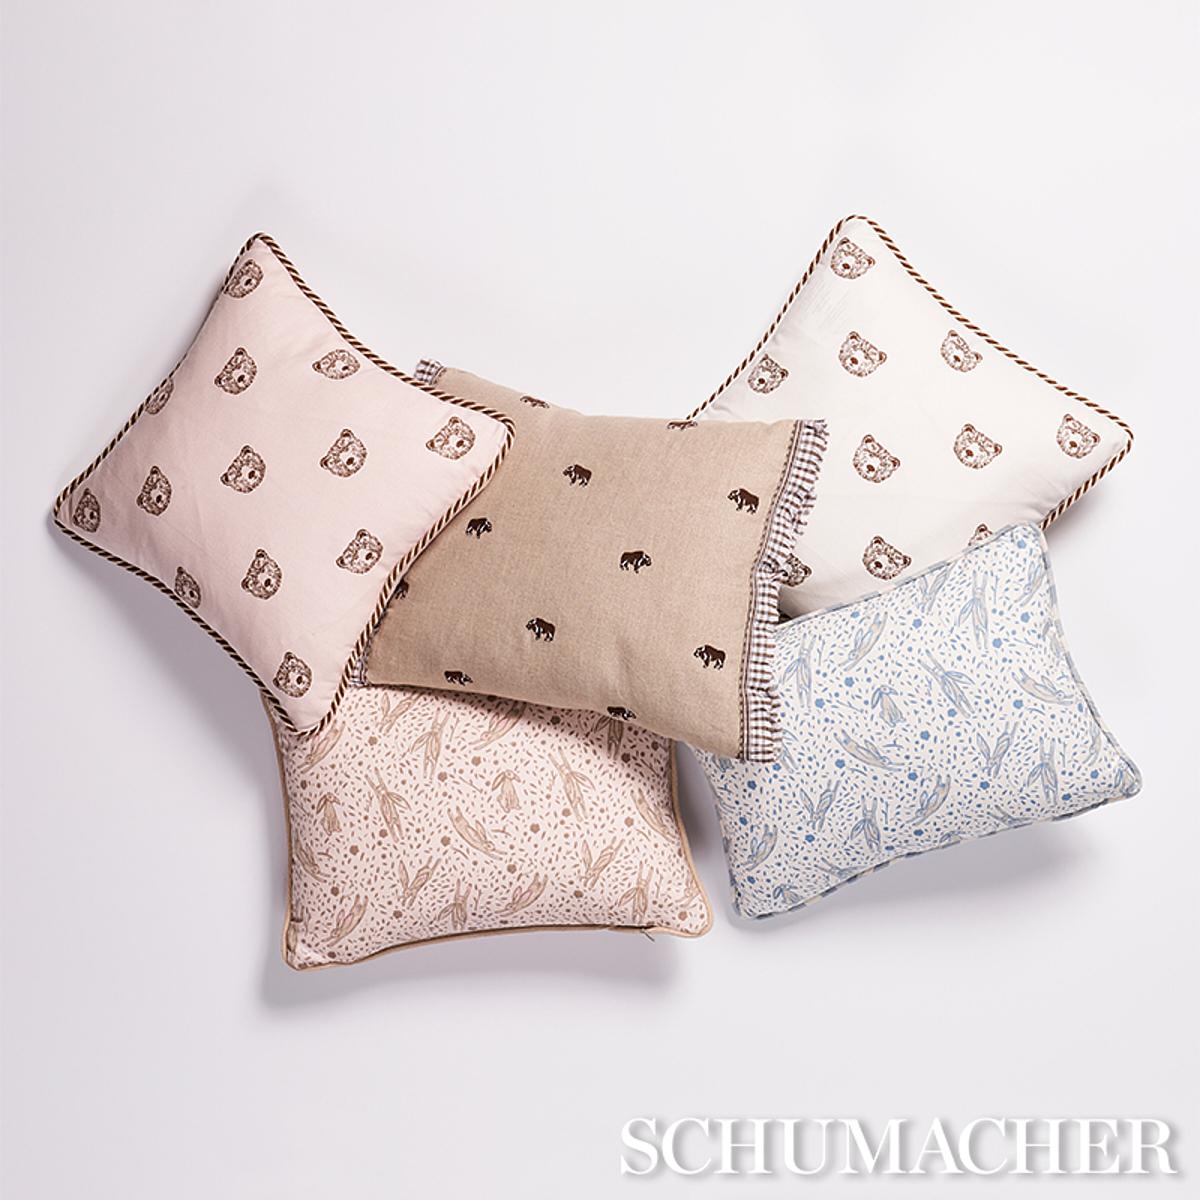 Modern Schumacher x Marie-Chantal Rabbit Print 16 x 12